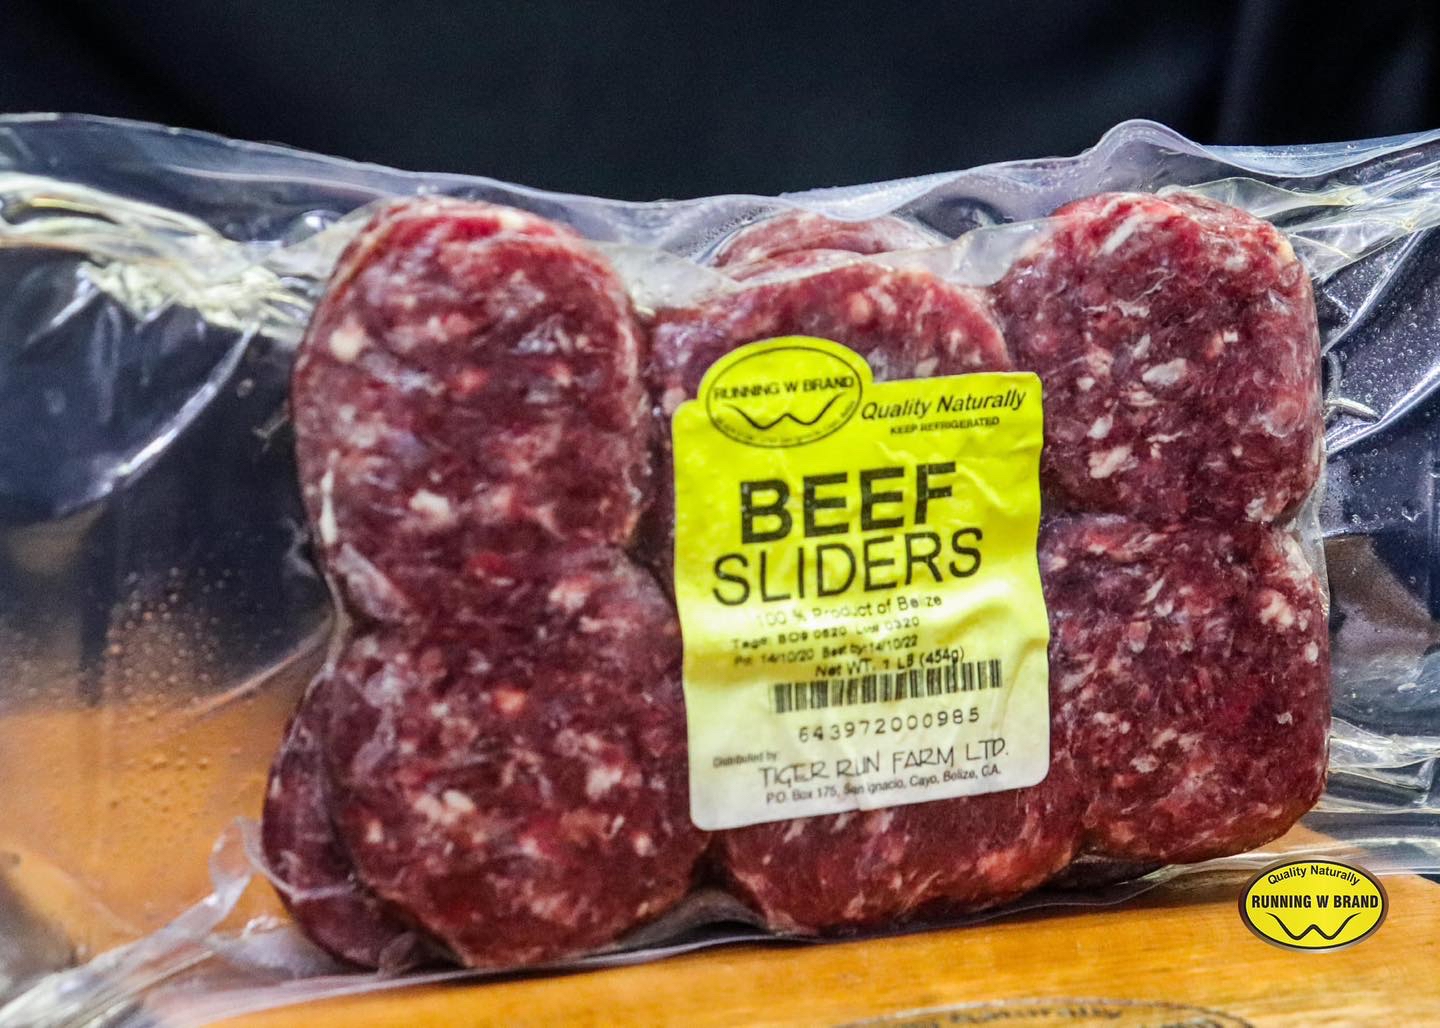 Running W Brand Meats - Meat Markets